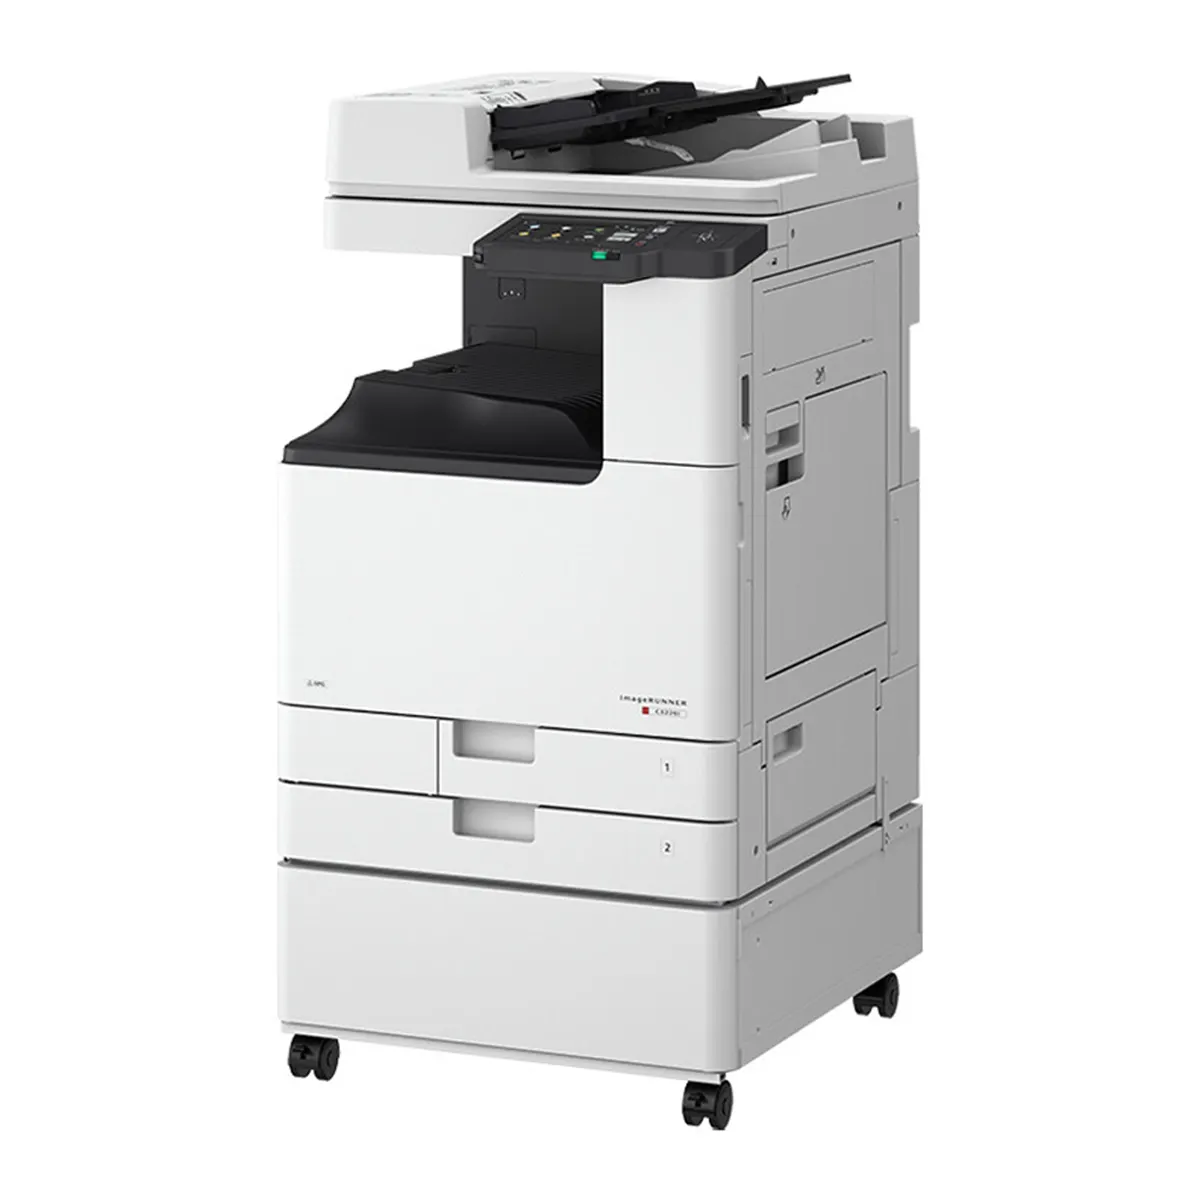 Nouvel arrivage de photocopieuse de bureau pour iR-ADV DX C3826 imprimante laser couleur A3 remanufacturée Scanner copieur avec NPG-67